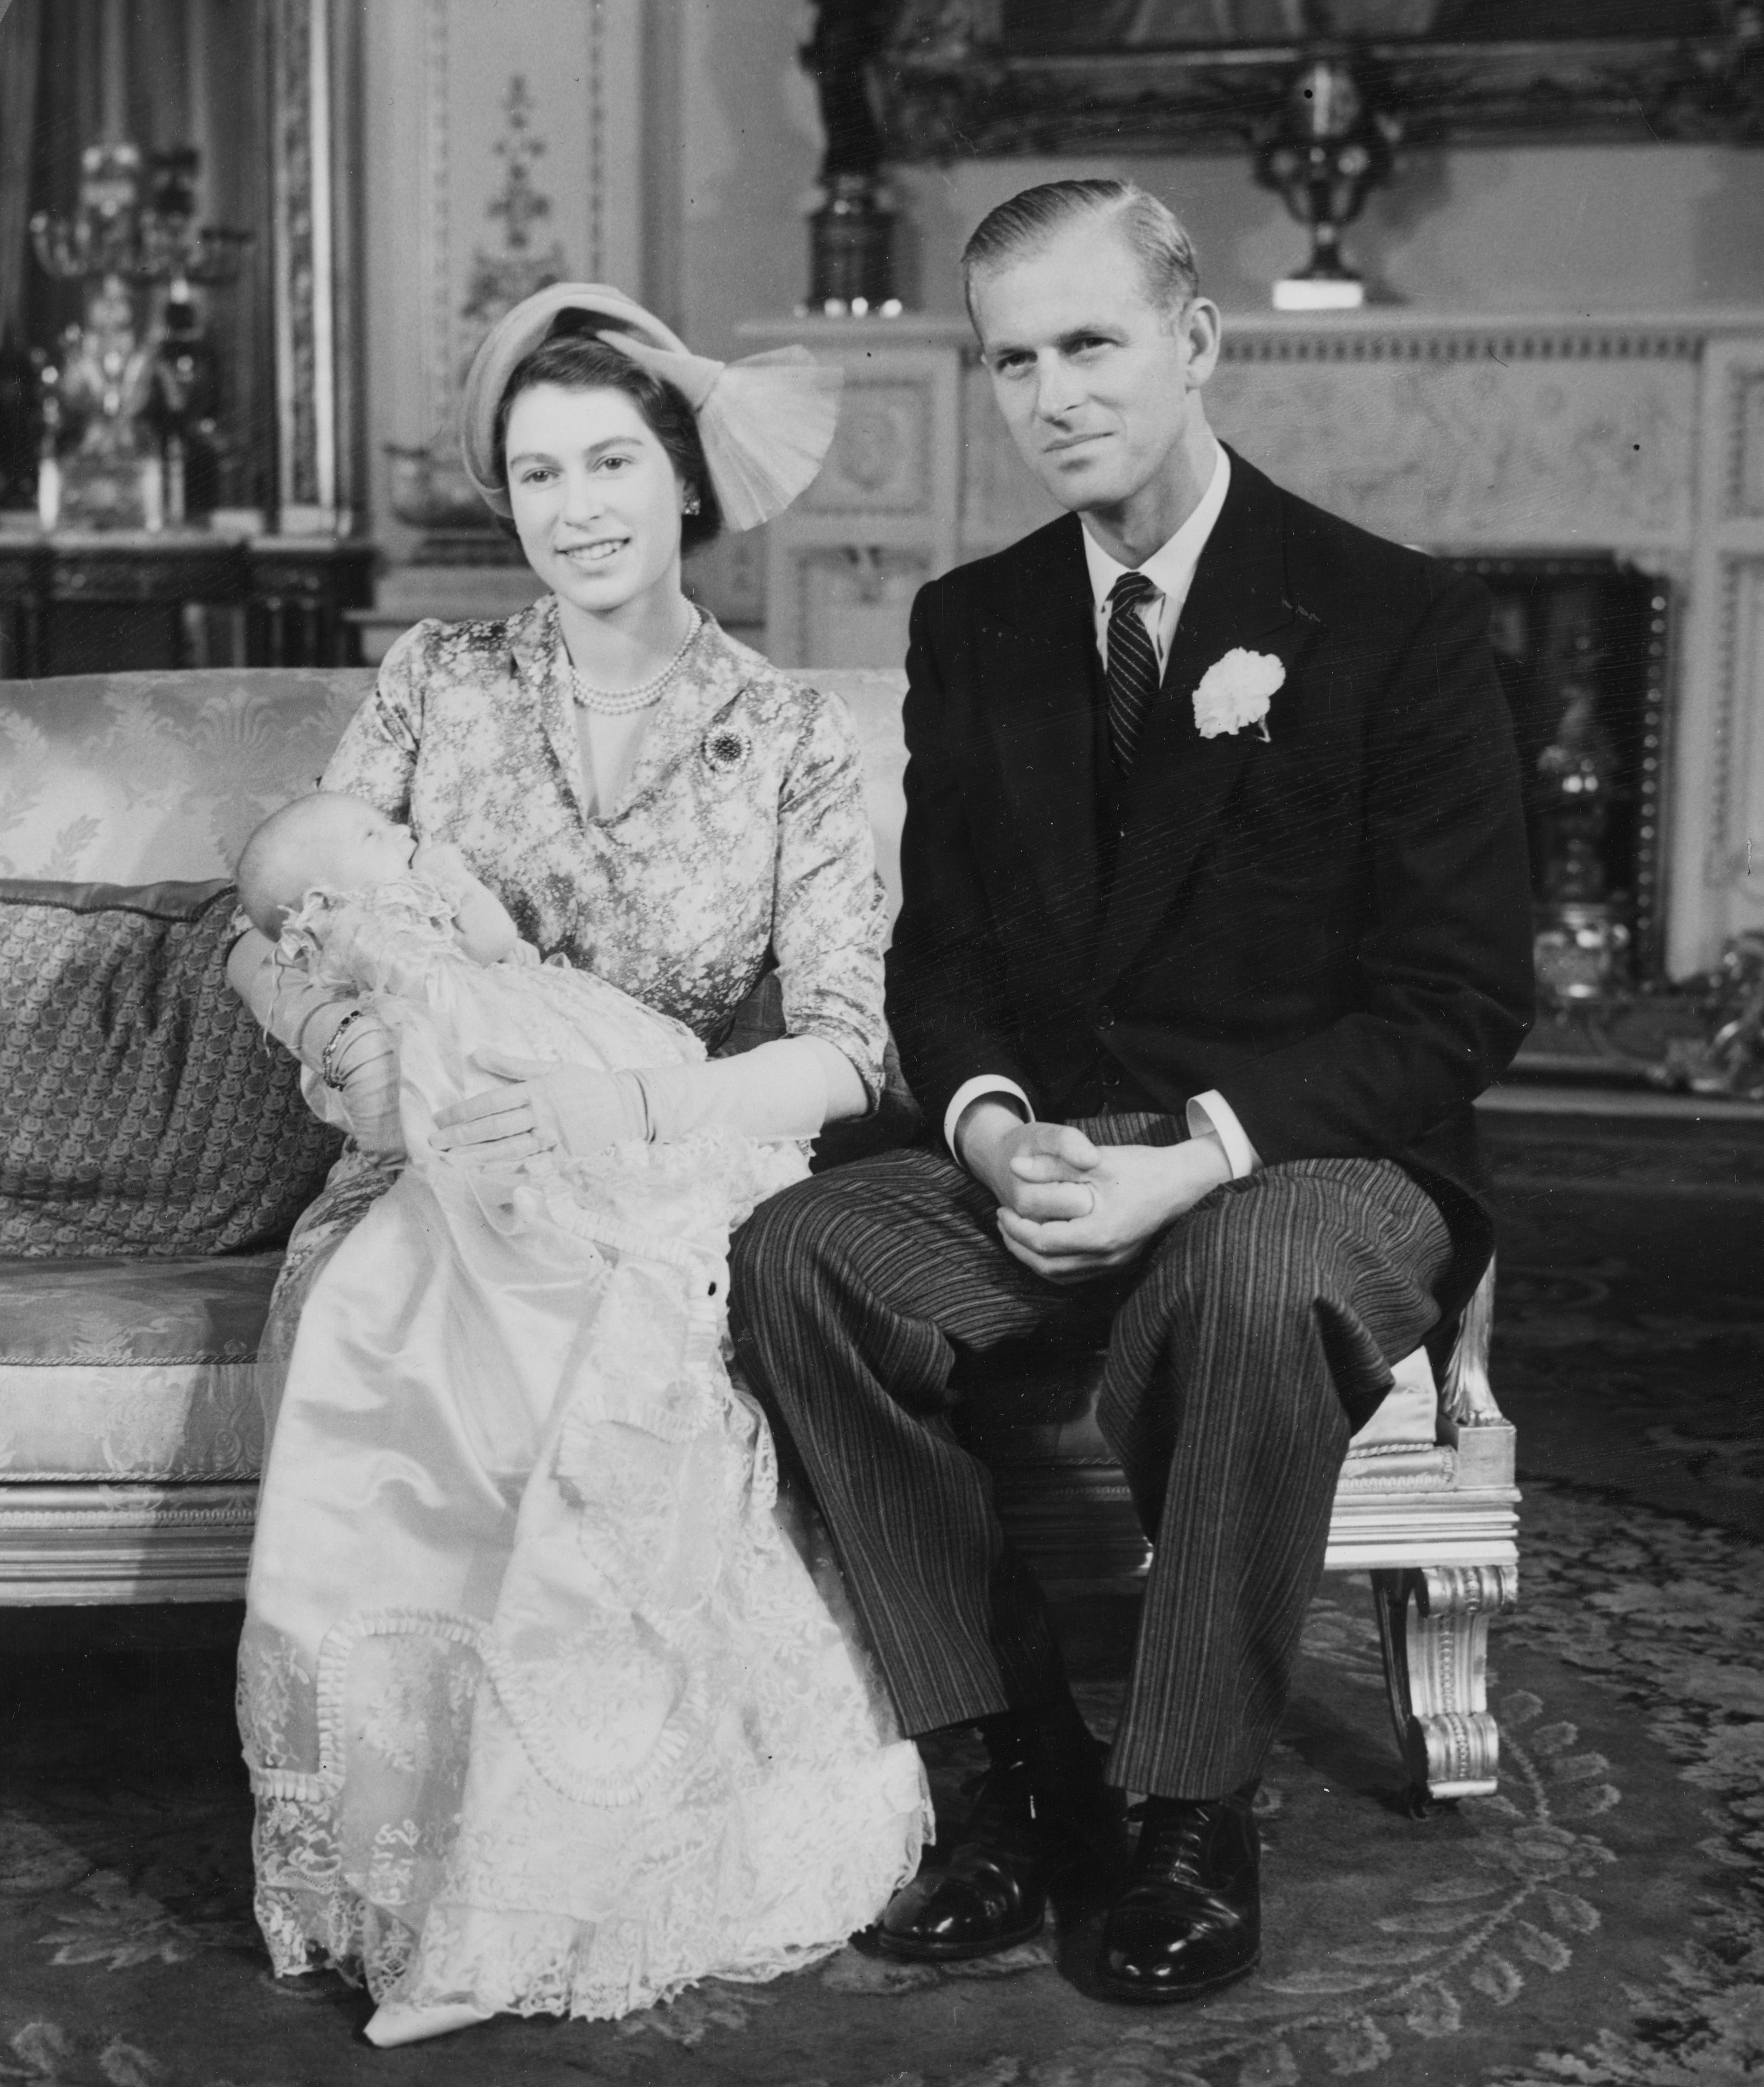   Le prince Phil vu ici avec son épouse la reine Elizabeth II et leur fille la princesse Anne